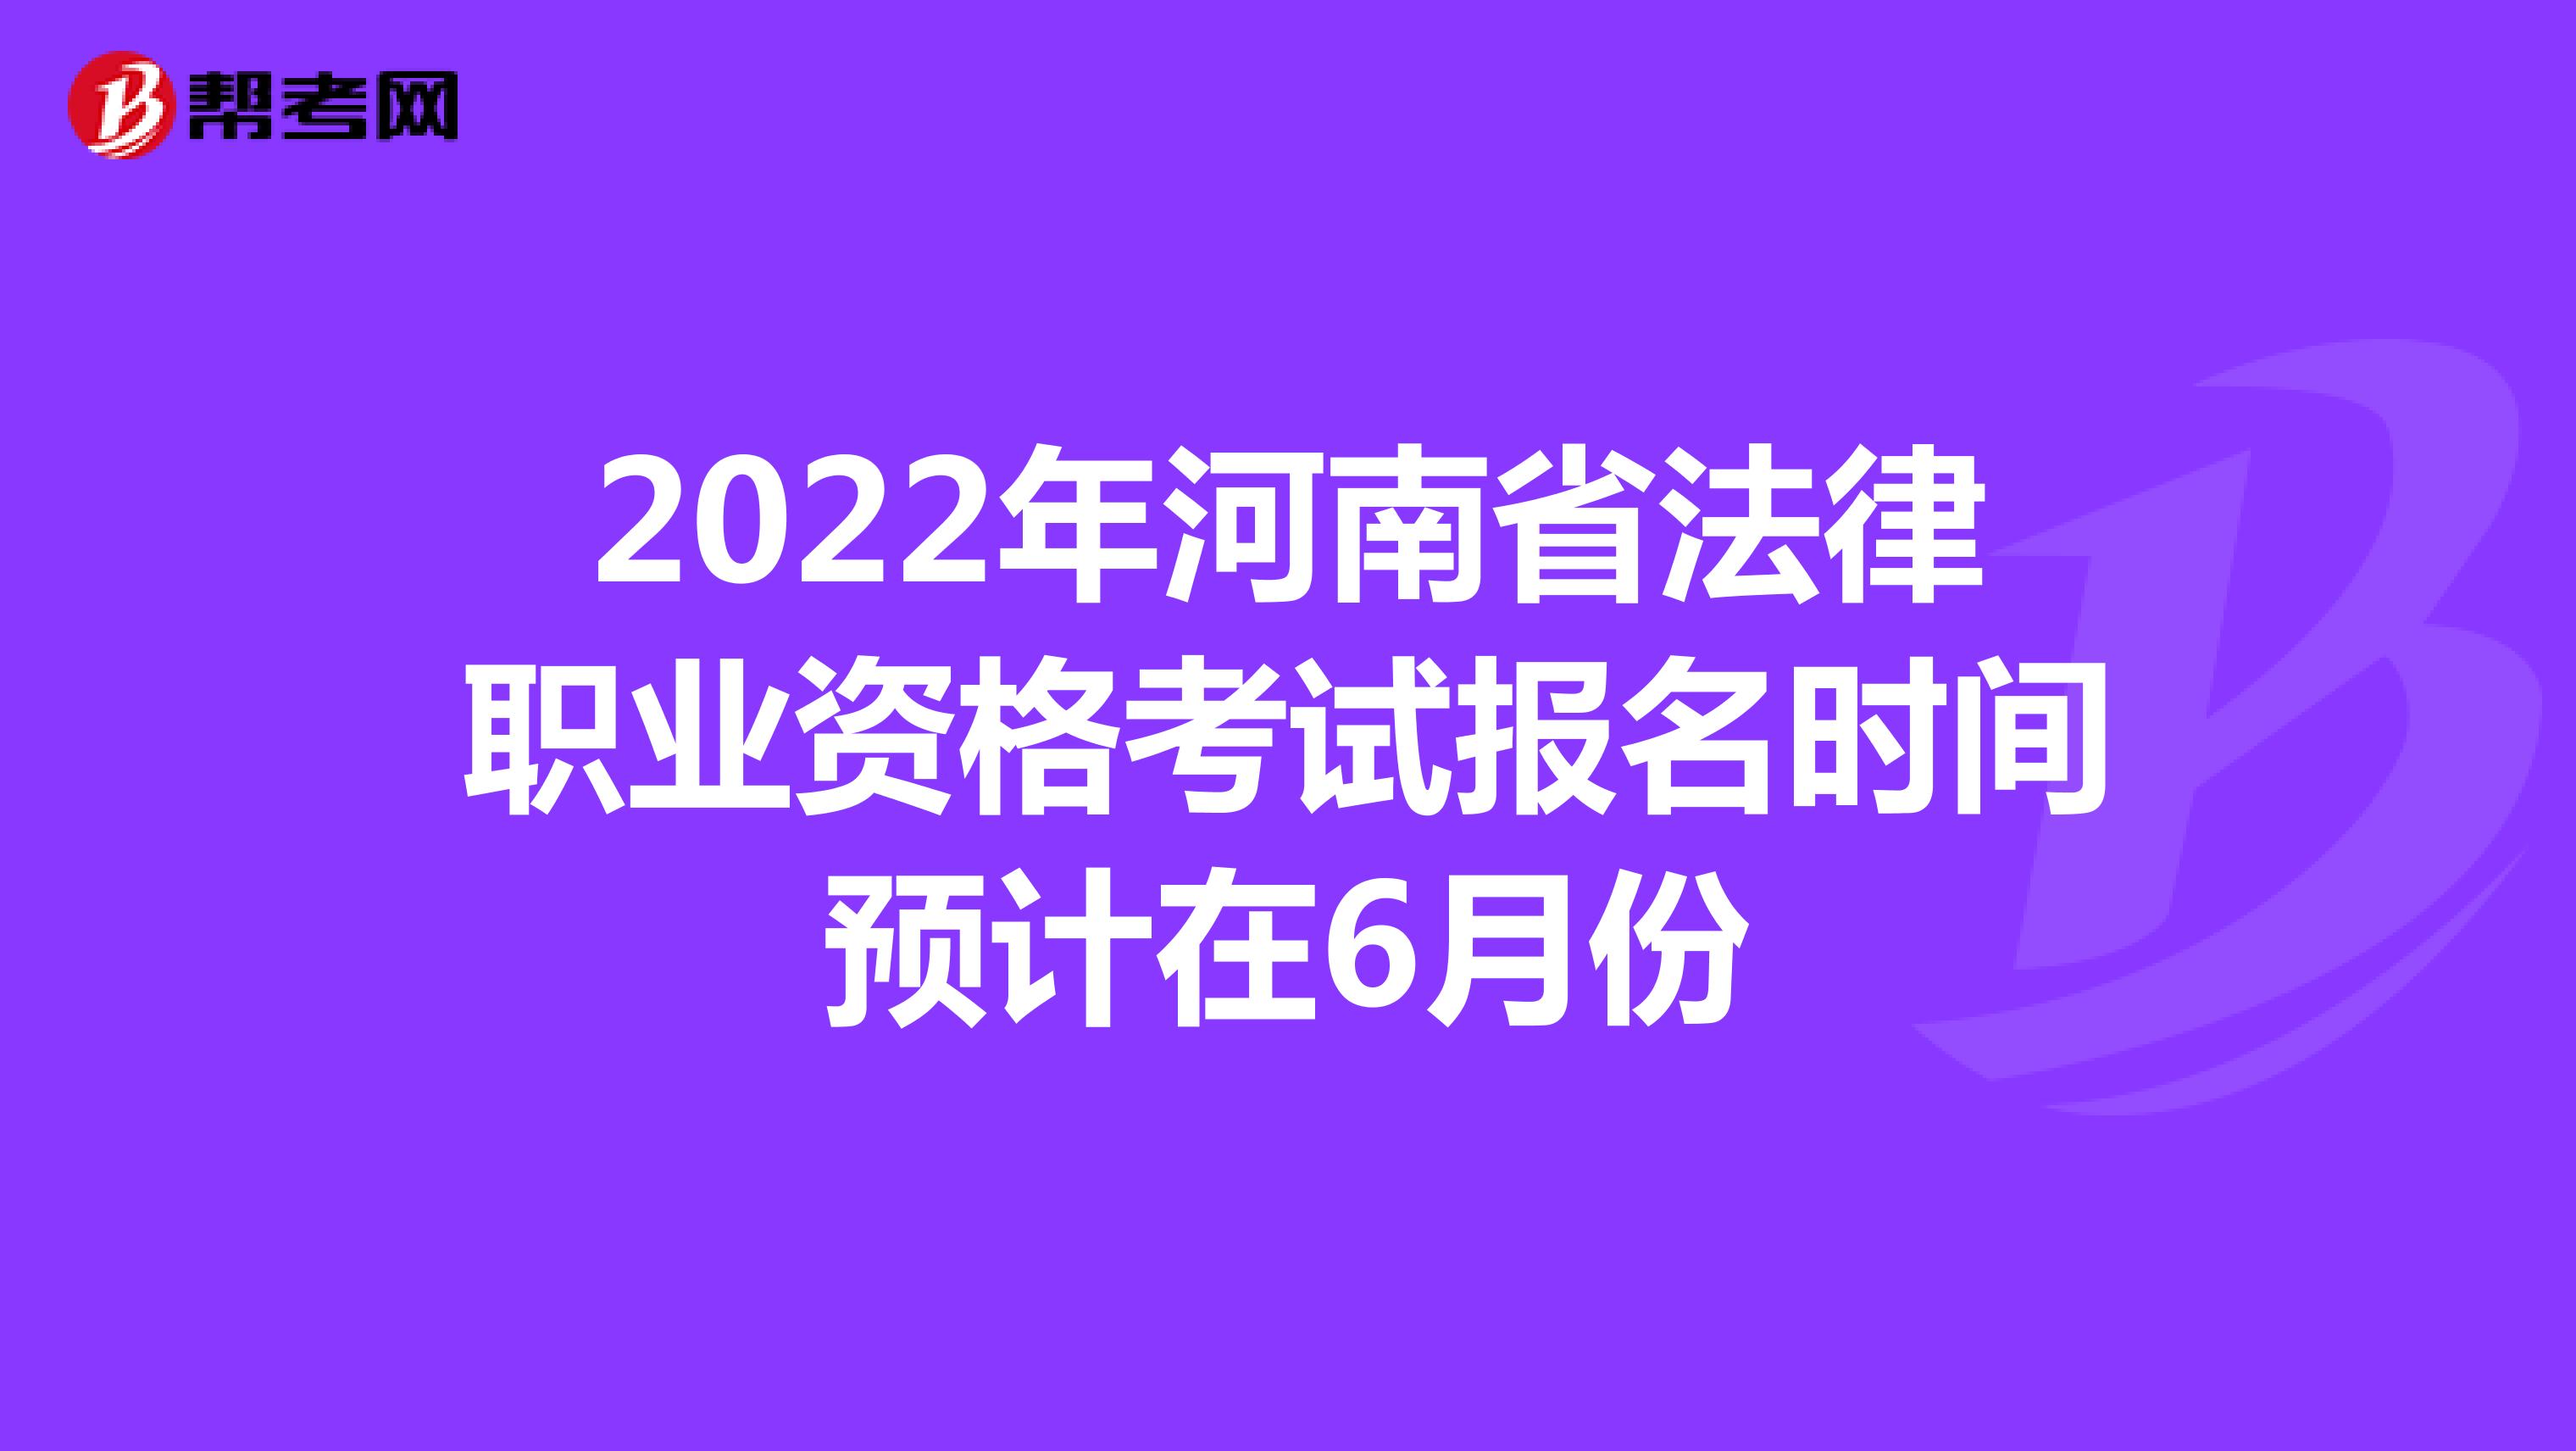 2022年河南省法律职业资格考试报名时间预计在6月份